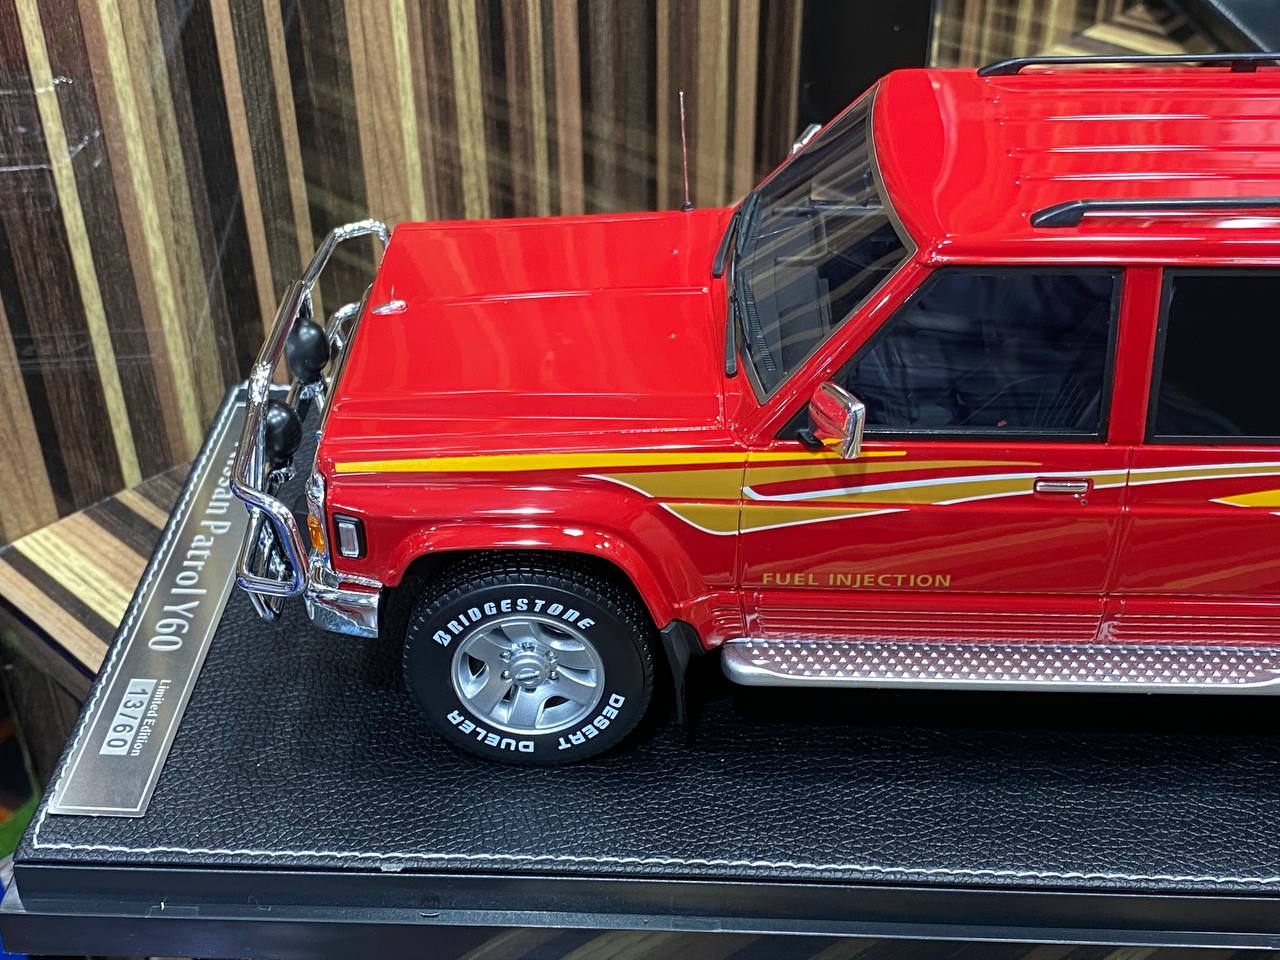 1/18 Diecast Nissan Patrol Super Safari Y60 IVY Models Scale Model Car